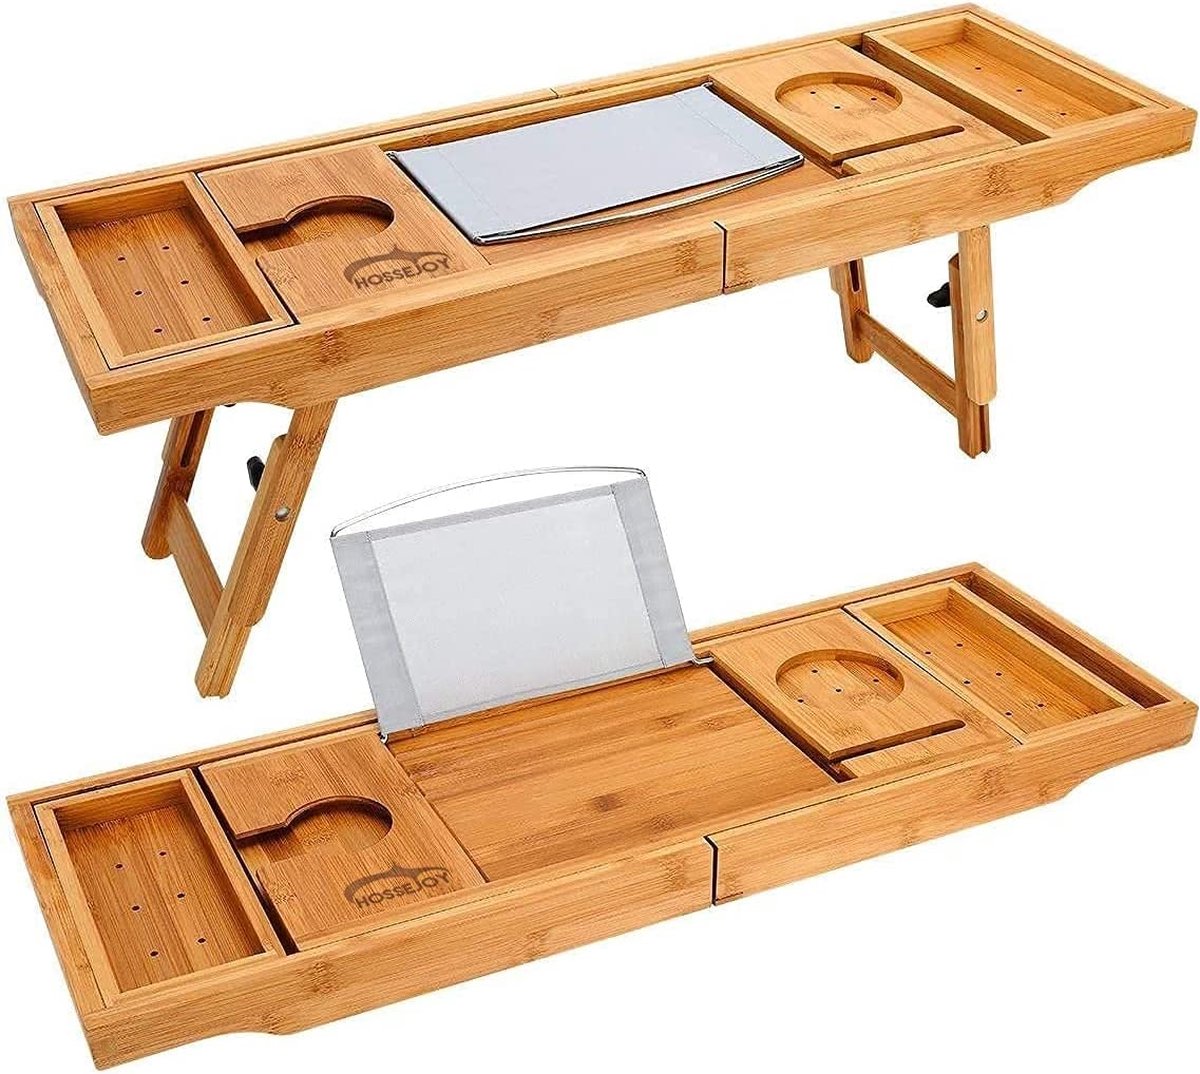 Bad-caddy & laptopbed bureau - 2-in-1, badkuip tablet standaard geïntegreerd voor boeken van tablets, badkamer en organizer met smartphone en wijnglashouder en tablethouder